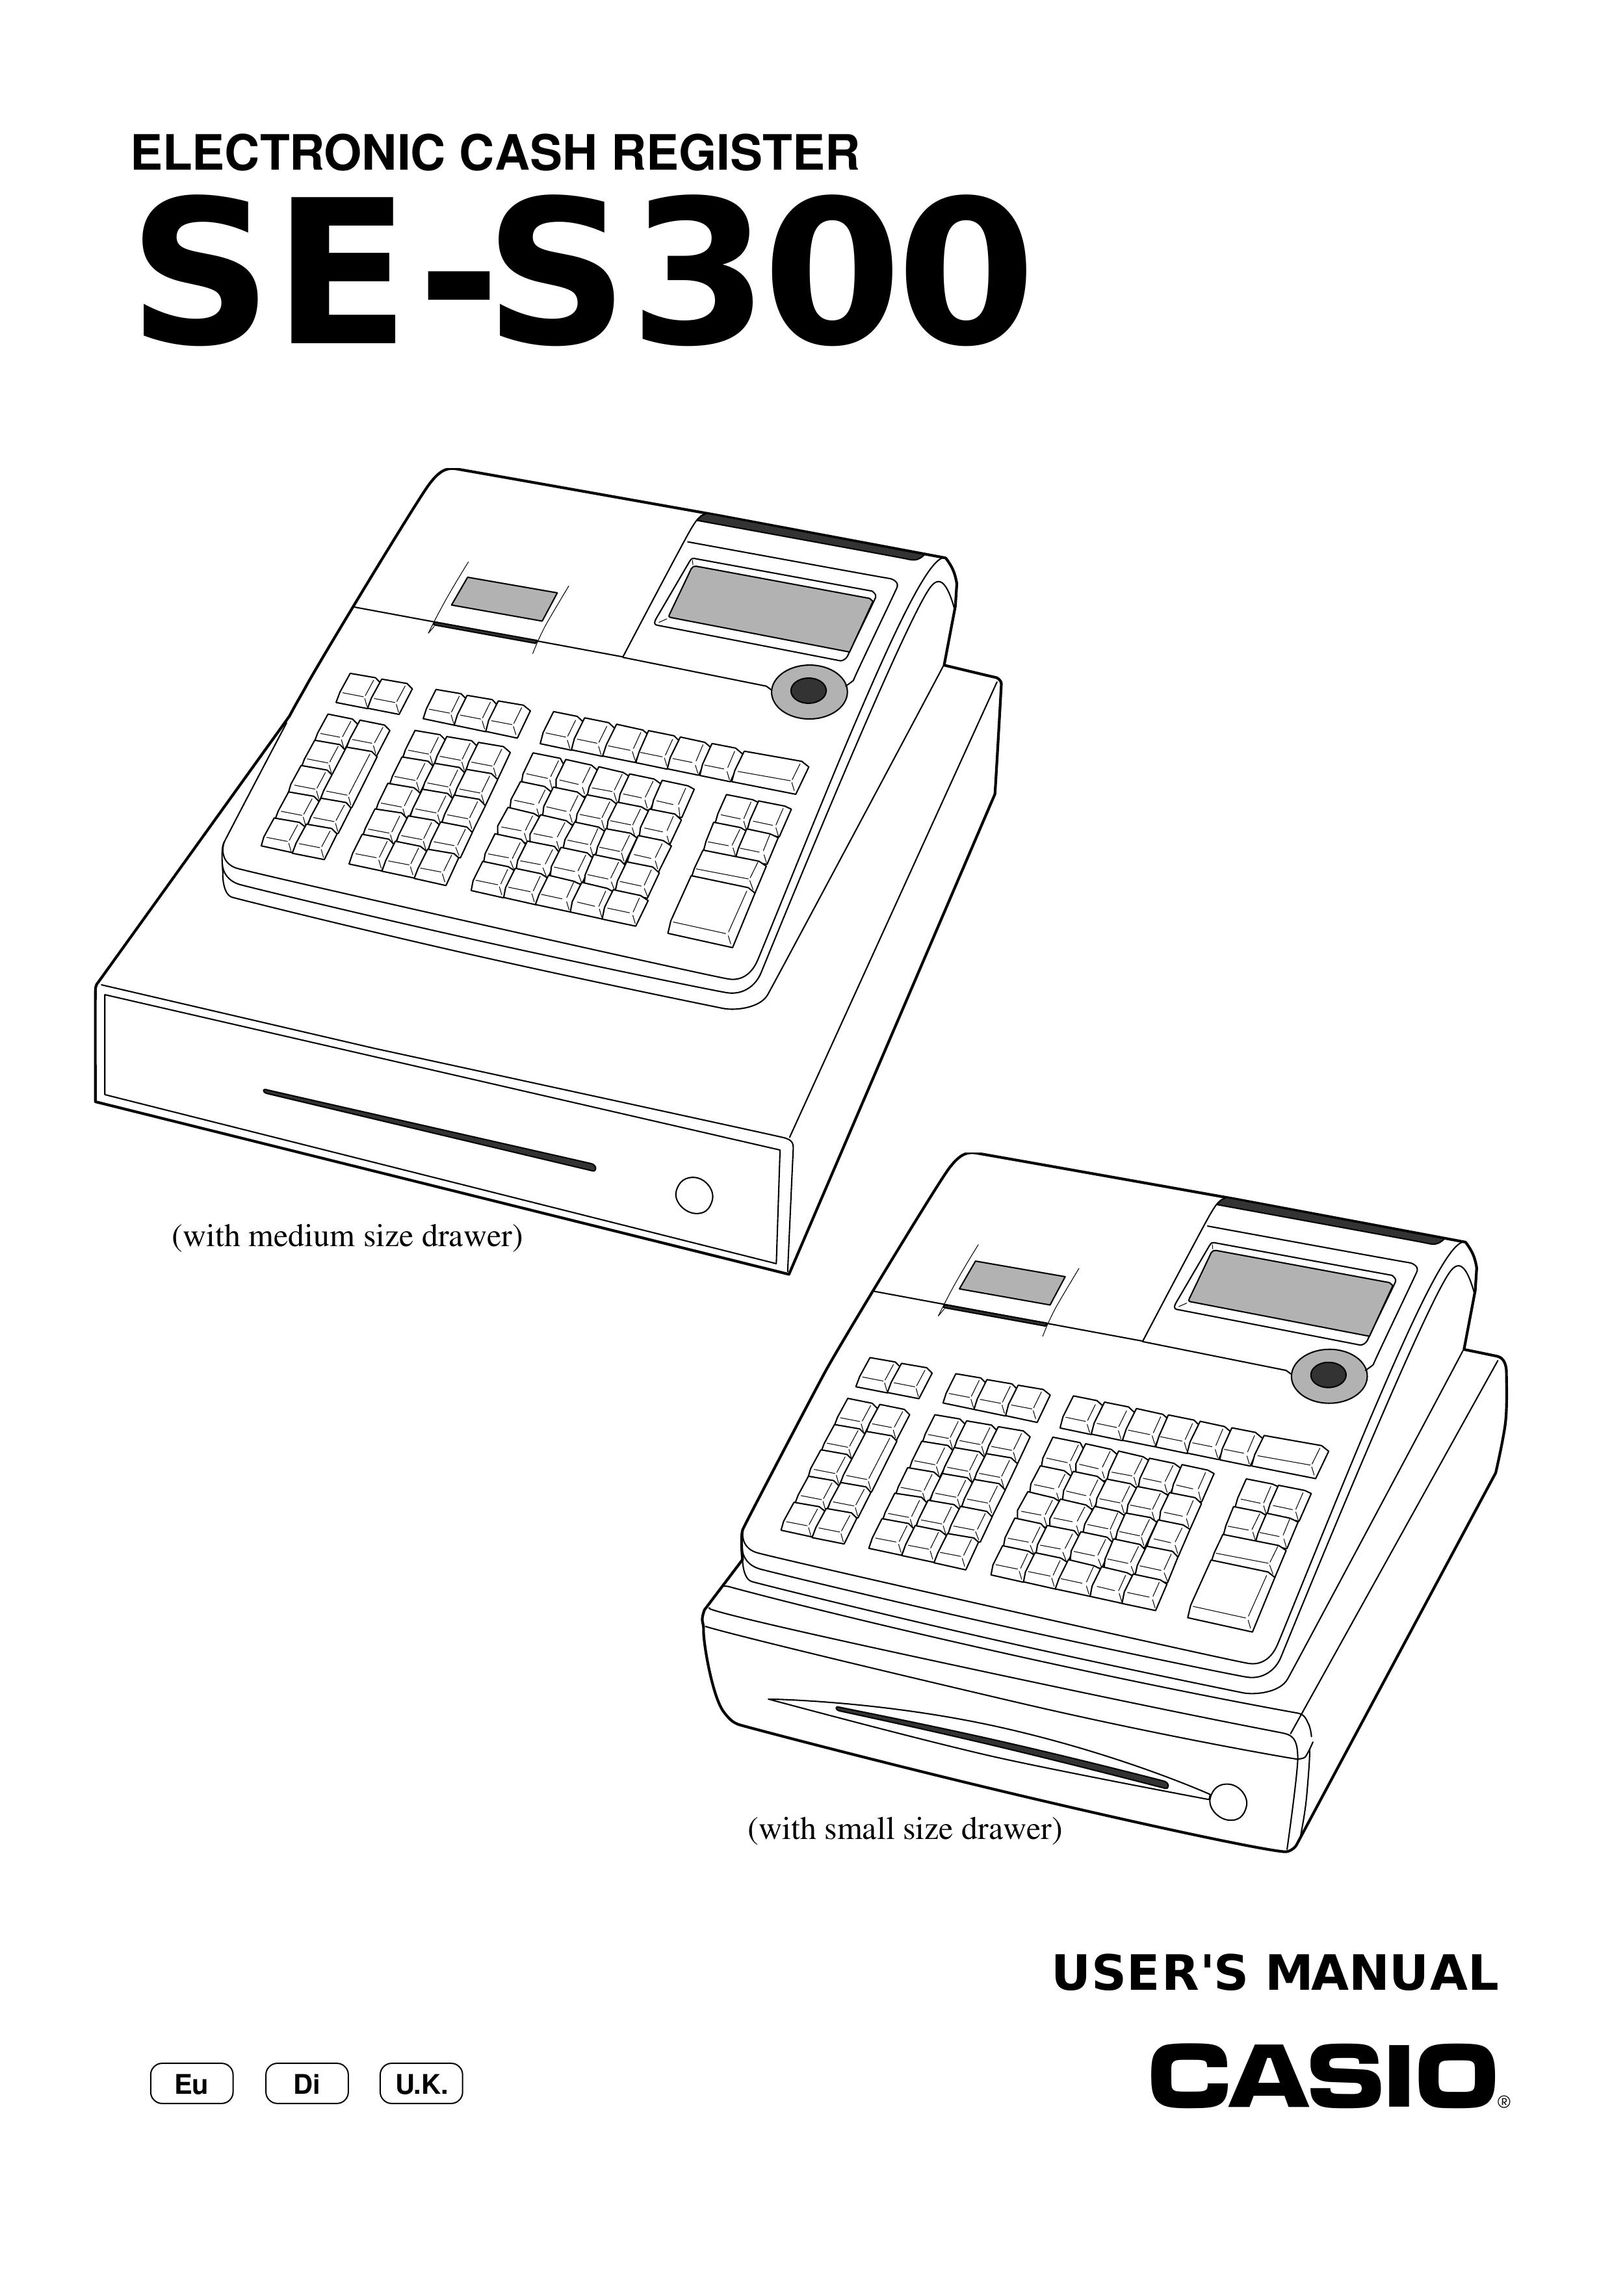 Casio SE-S300 Cash Register User Manual